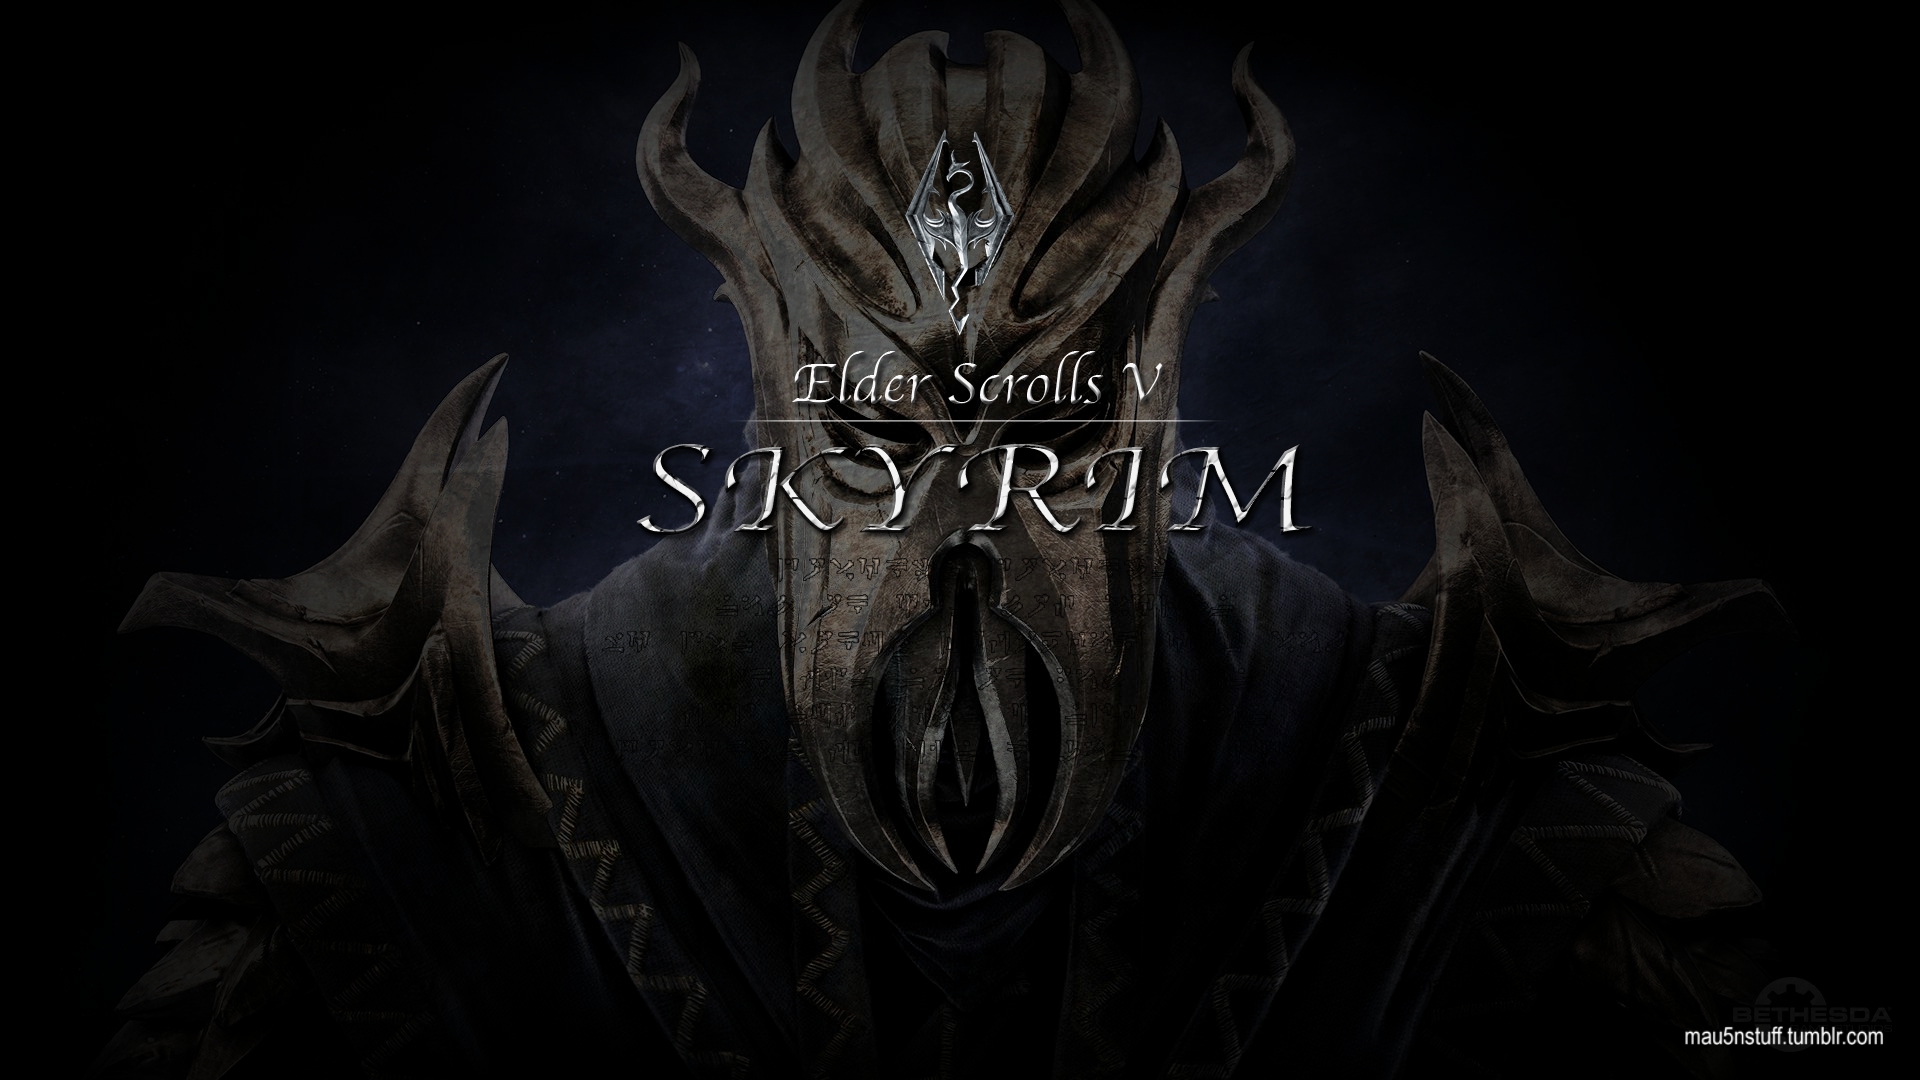 Skyrim Dragonborn Wallpaper 1080p Game HD